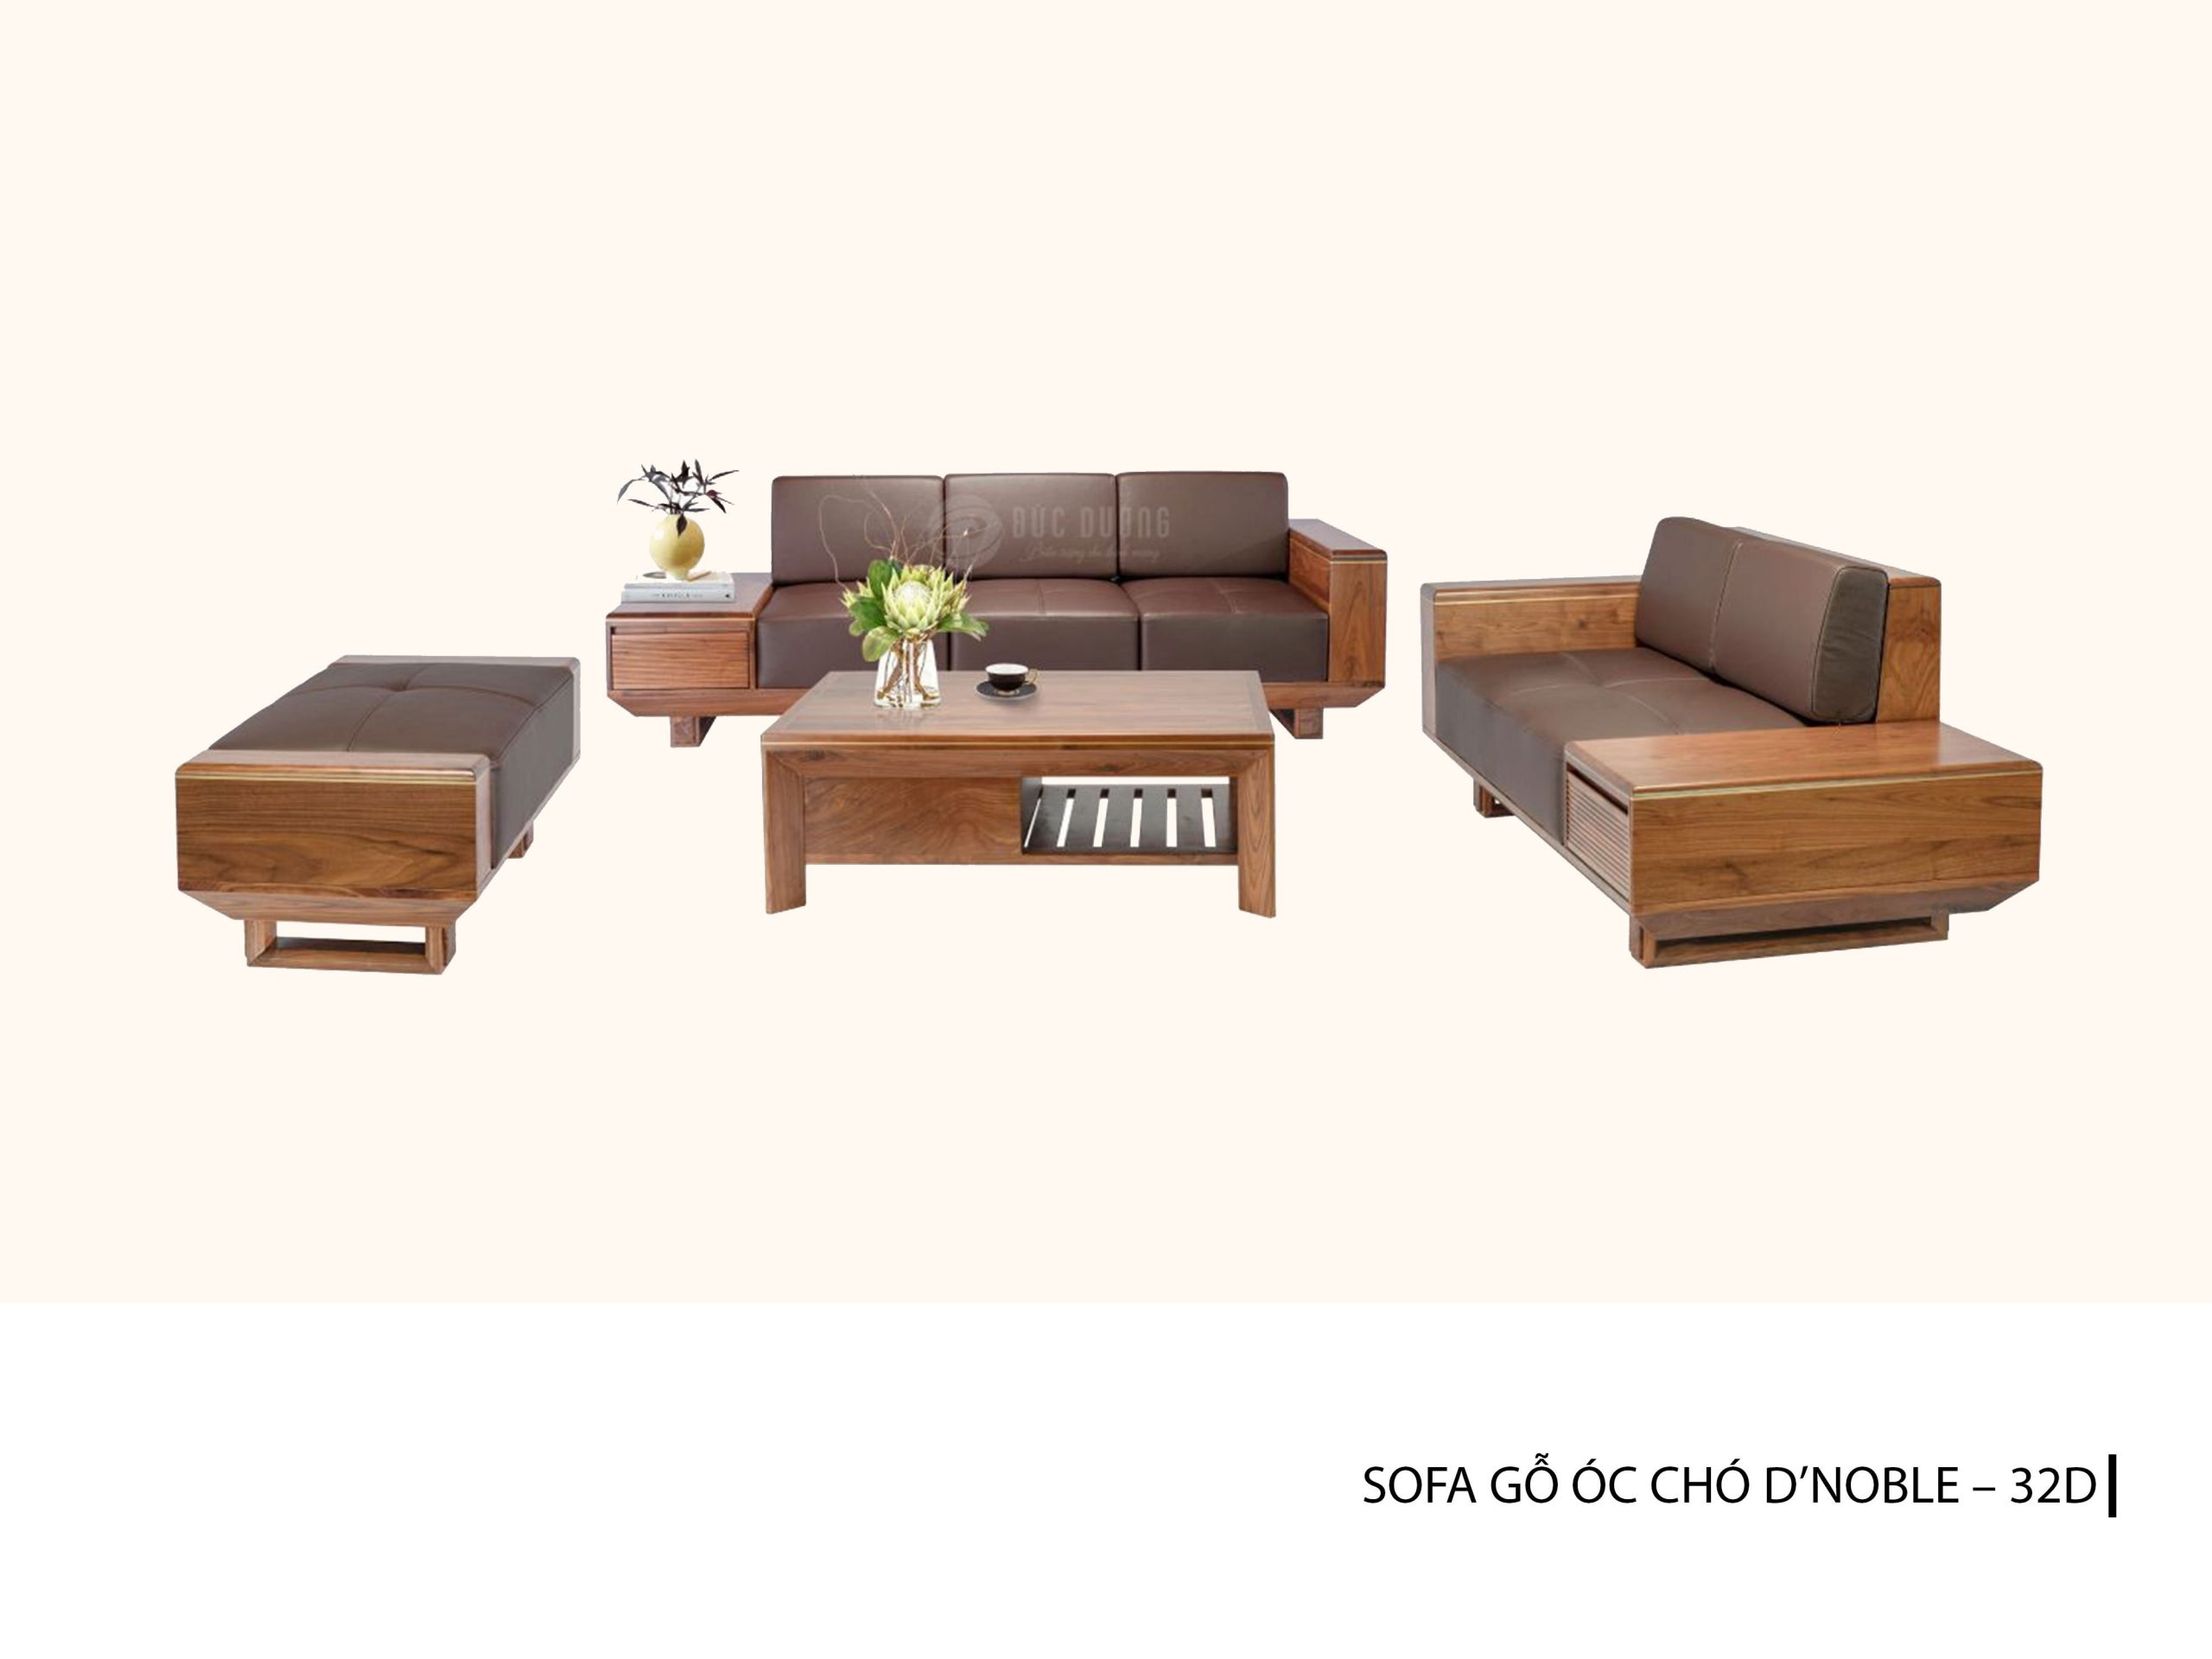 Sofa gỗ Óc Chó D\'Noble 32D - mẫu 2024 này sẽ là đắt khách của bạn bởi vẻ ngoài hiện đại và sang trọng. Sofa này được làm từ gỗ Óc Chó cao cấp, có tỉ lệ hài hòa giữa độ cứng và độ dẻo của gỗ, mang lại sự thoải mái và độ bền cao. Chất liệu và thiết kế của sản phẩm cho phép bạn tùy chọn nhiều màu sắc và trang trí phù hợp với phong cách của gia đình bạn.